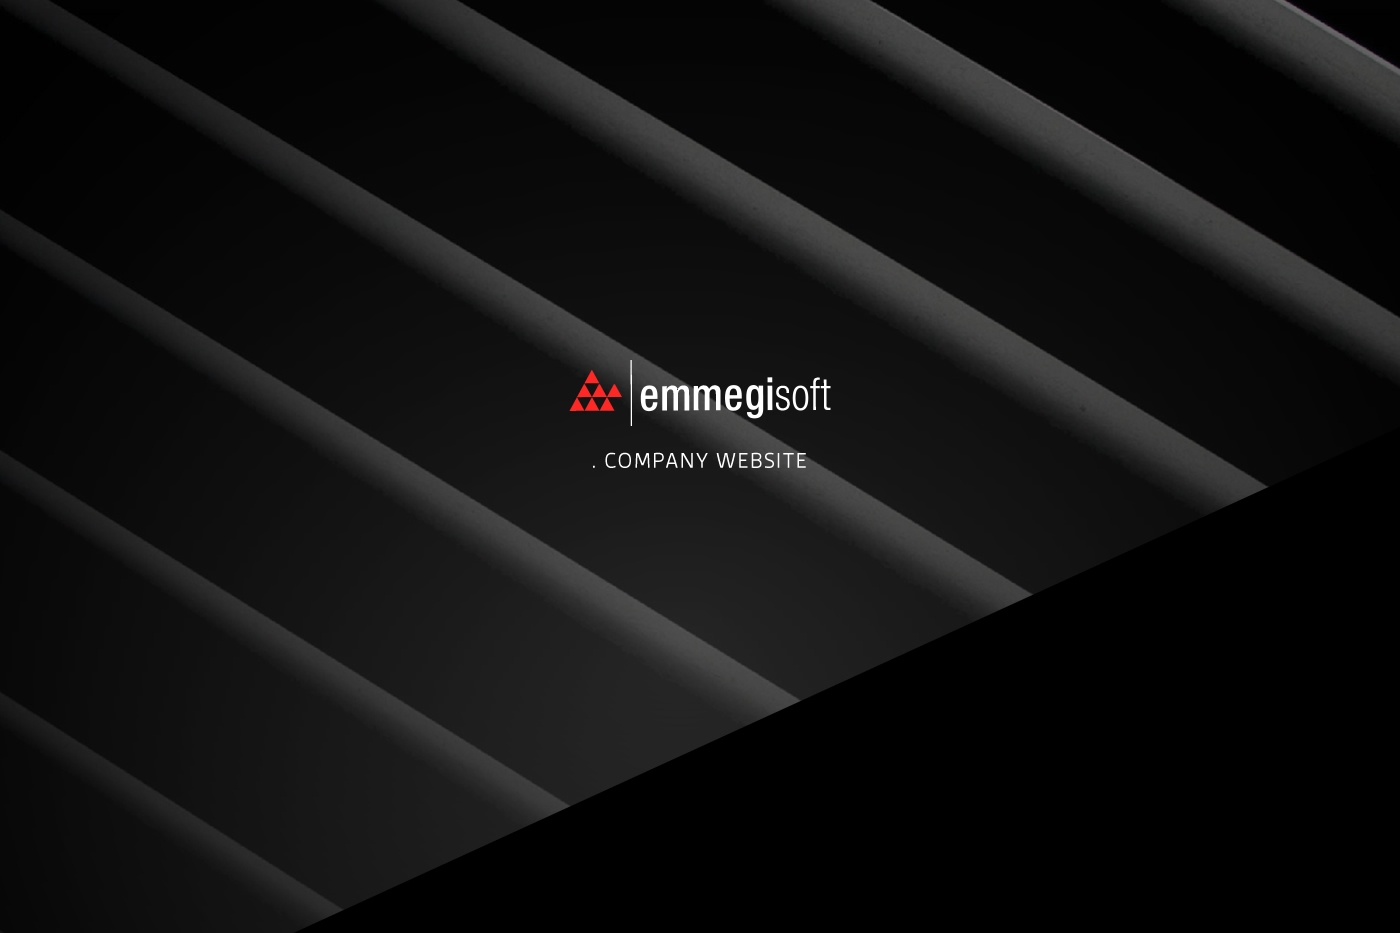 emmegisoft softwares emmegigroup fpsuite flushdesign Webdesign Webdevelopment mobile